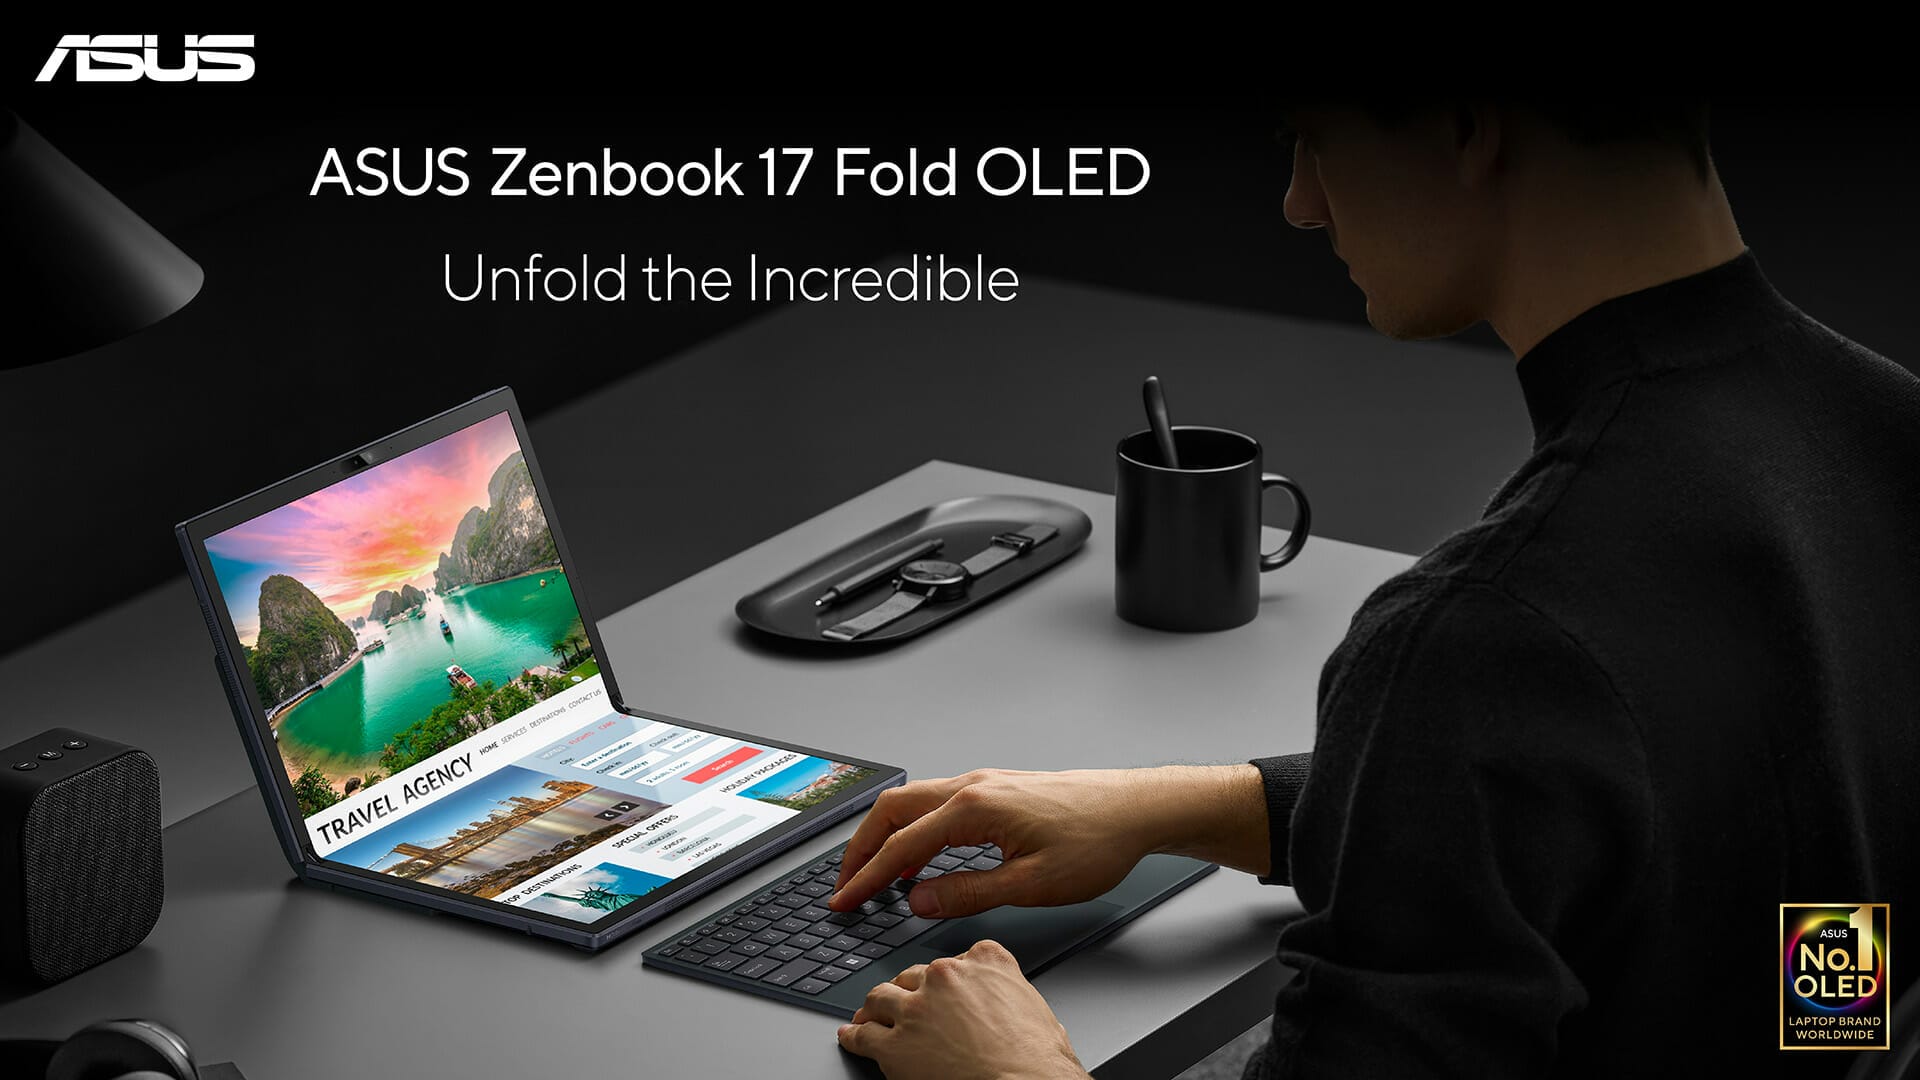 เปิดตัว ASUS Zenbook 17 Fold OLED! โน้ตบุ๊กจอพับ 17 นิ้ว